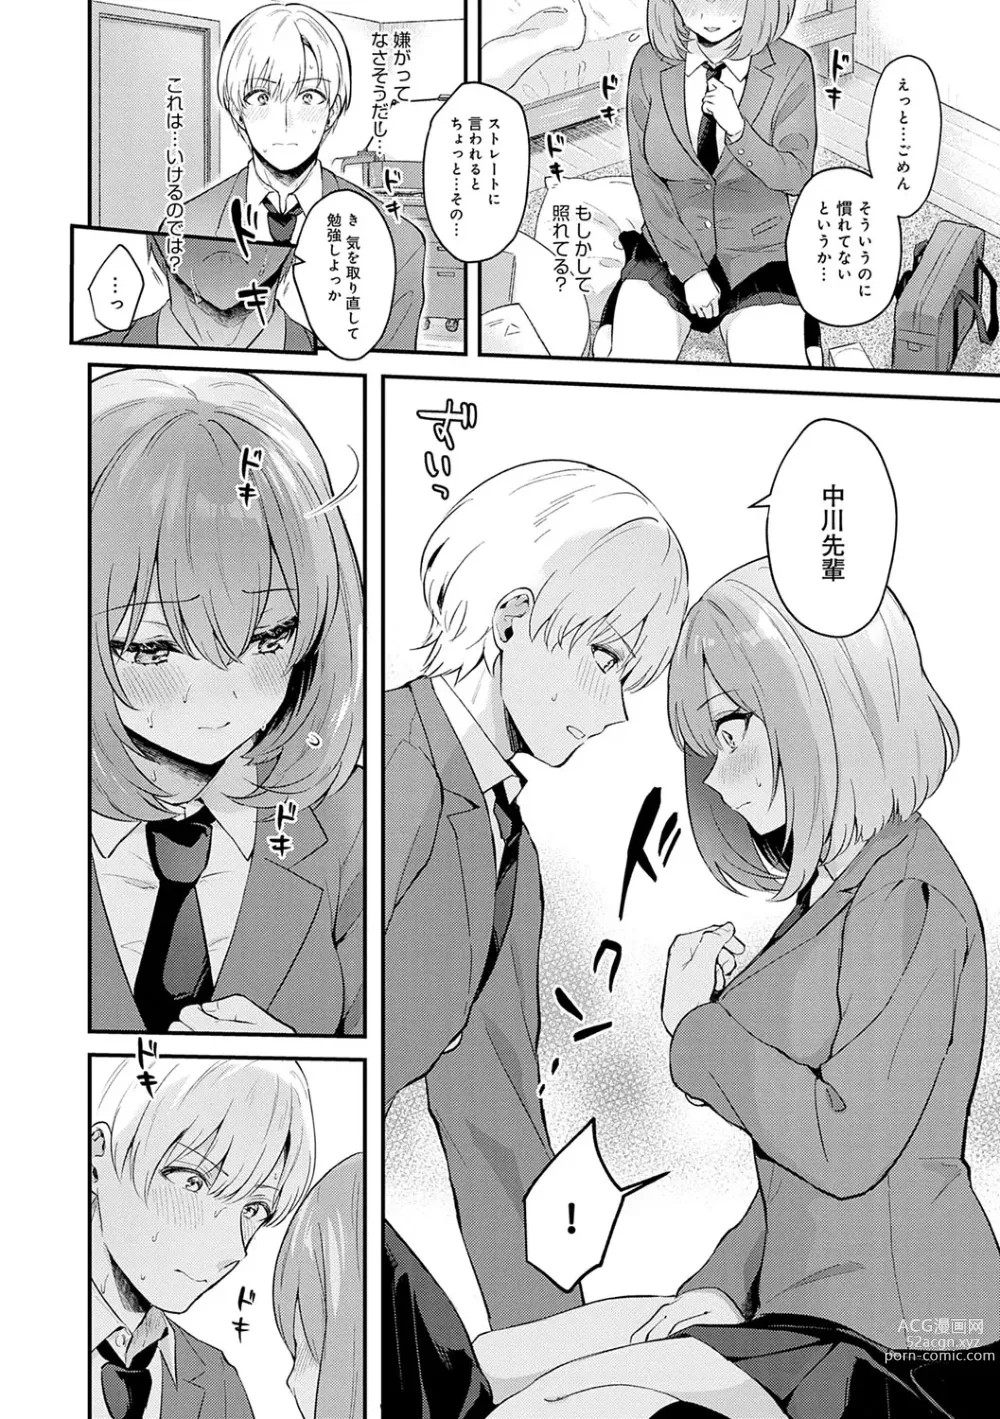 Page 9 of manga Kanojo Face